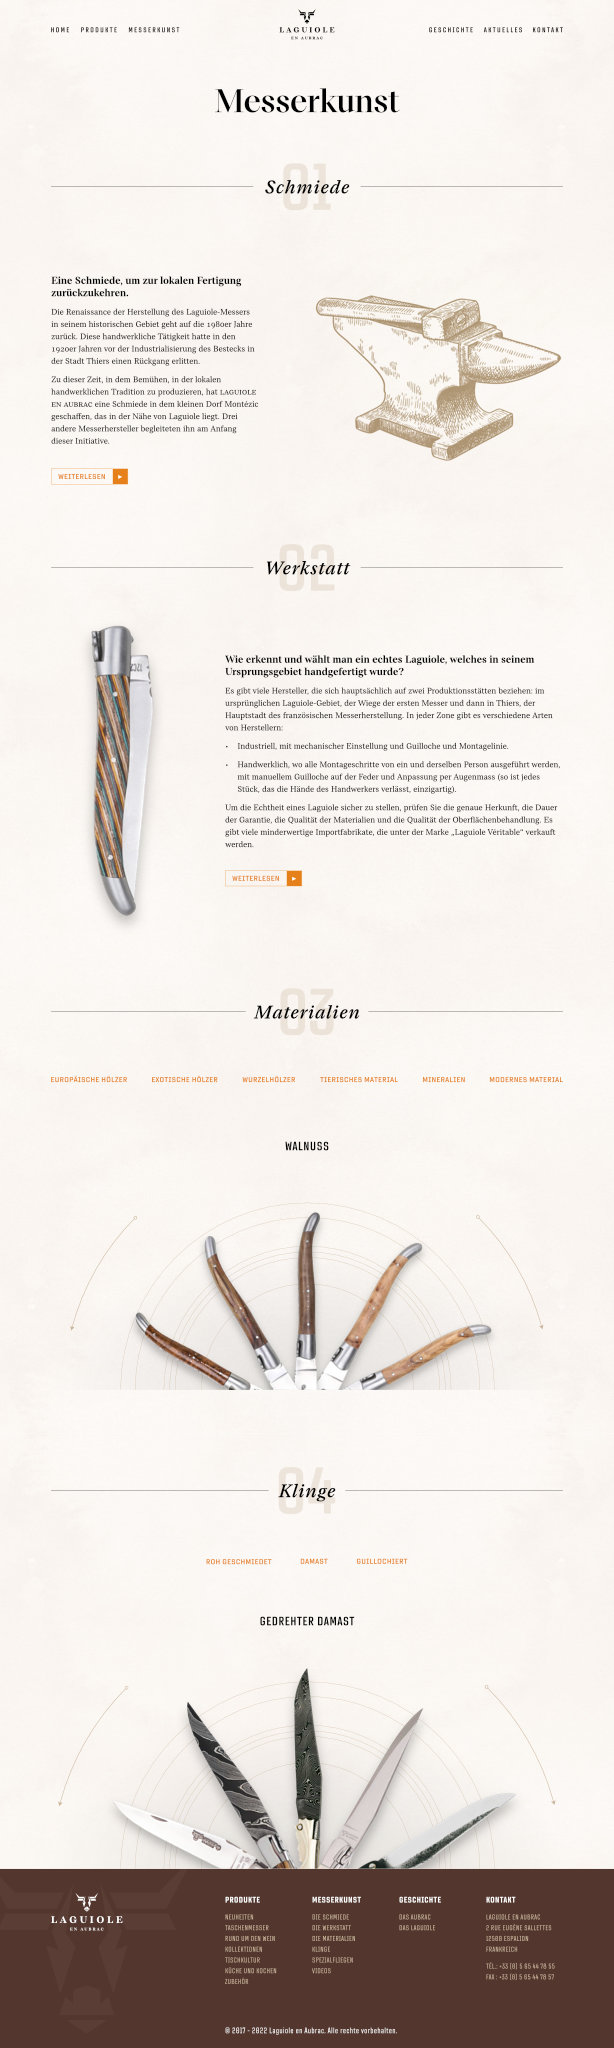 Webdesign für Laguiole: Messerkunst